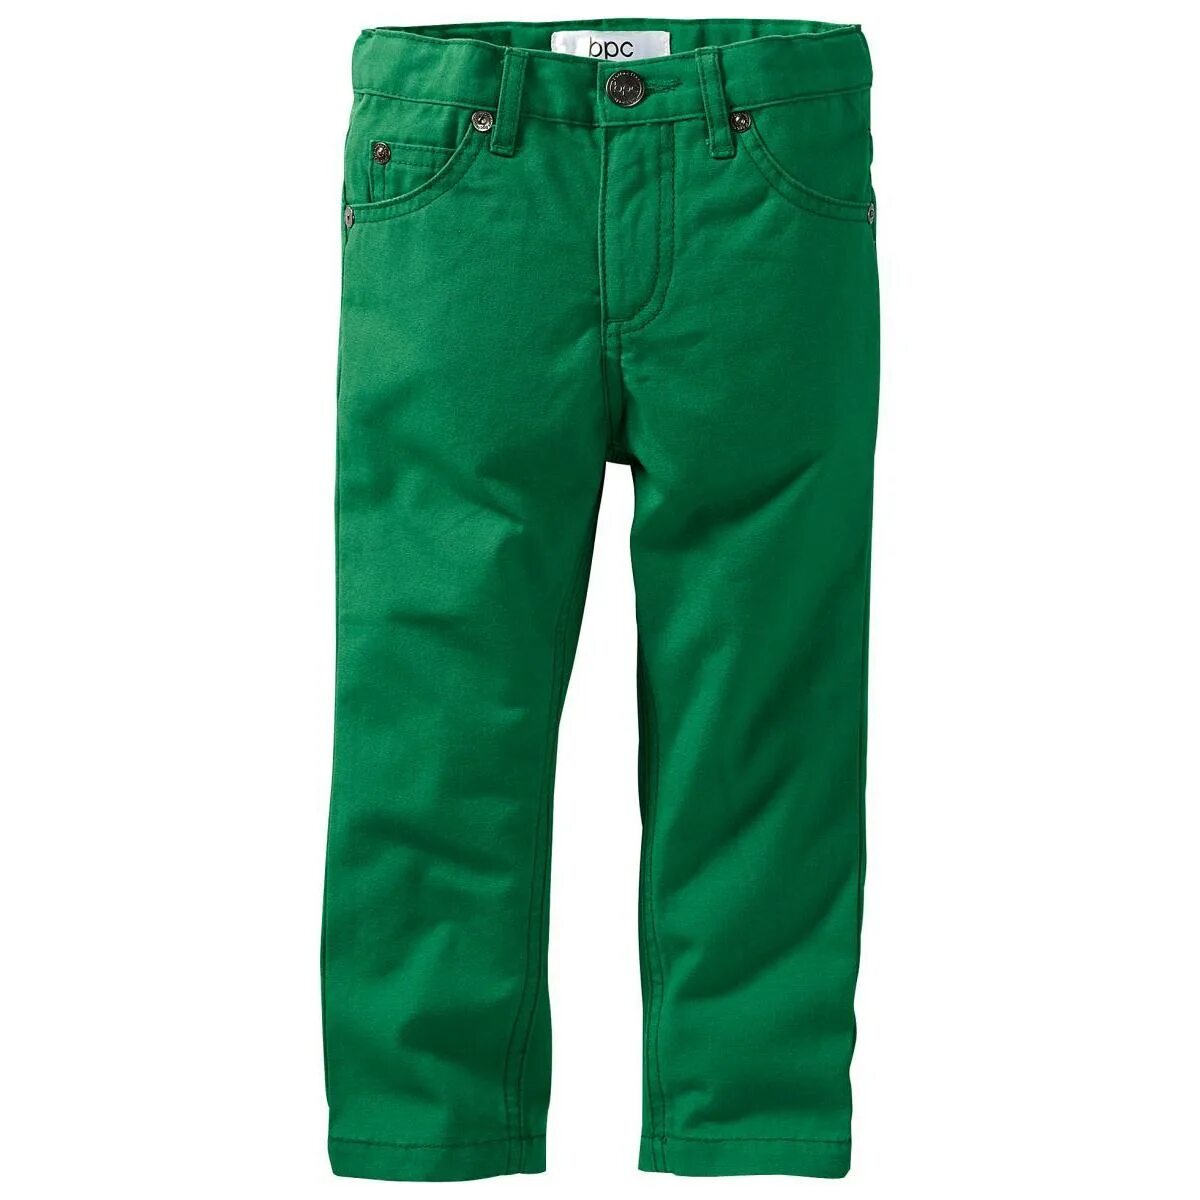 Купить зеленые штаны. Штаны bonprix Rainbow зеленые. Урюк зеленый. Зеленые брюки для мальчика. Салатовые брюки для мальчика.